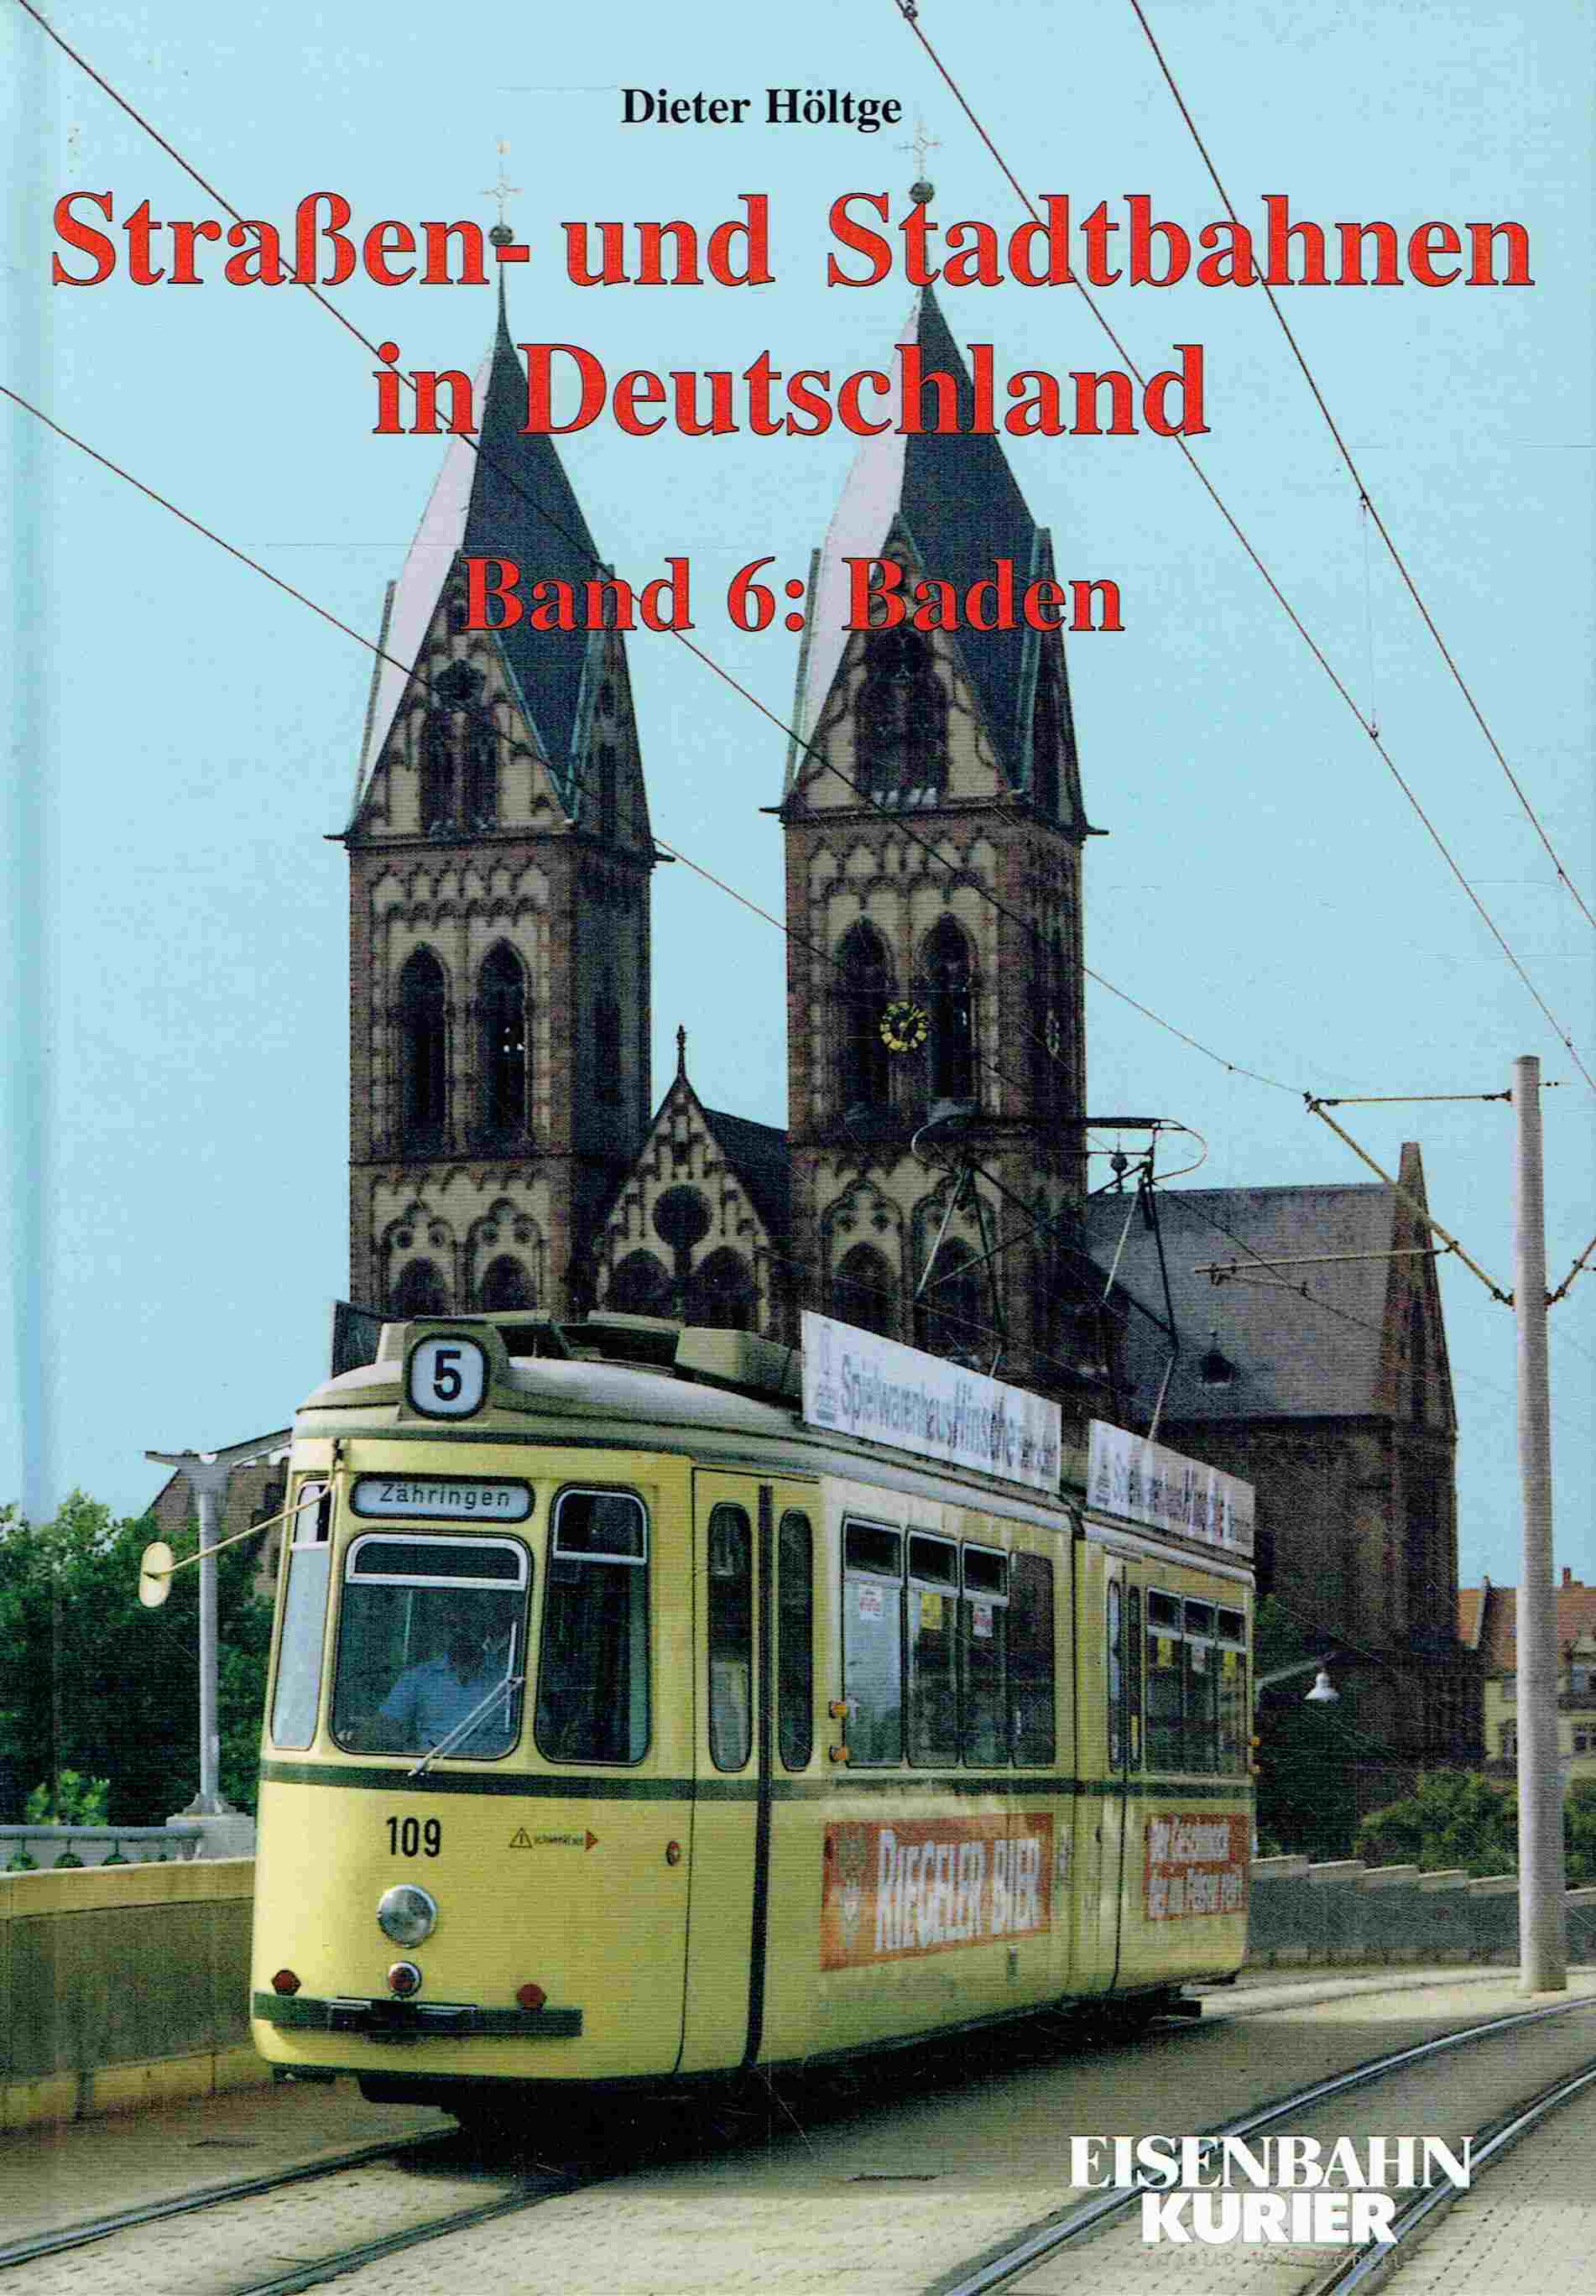 Straßenbahnen und Stadtbahnen in Deutschland. Band 6: Baden. - Höltge, Dieter